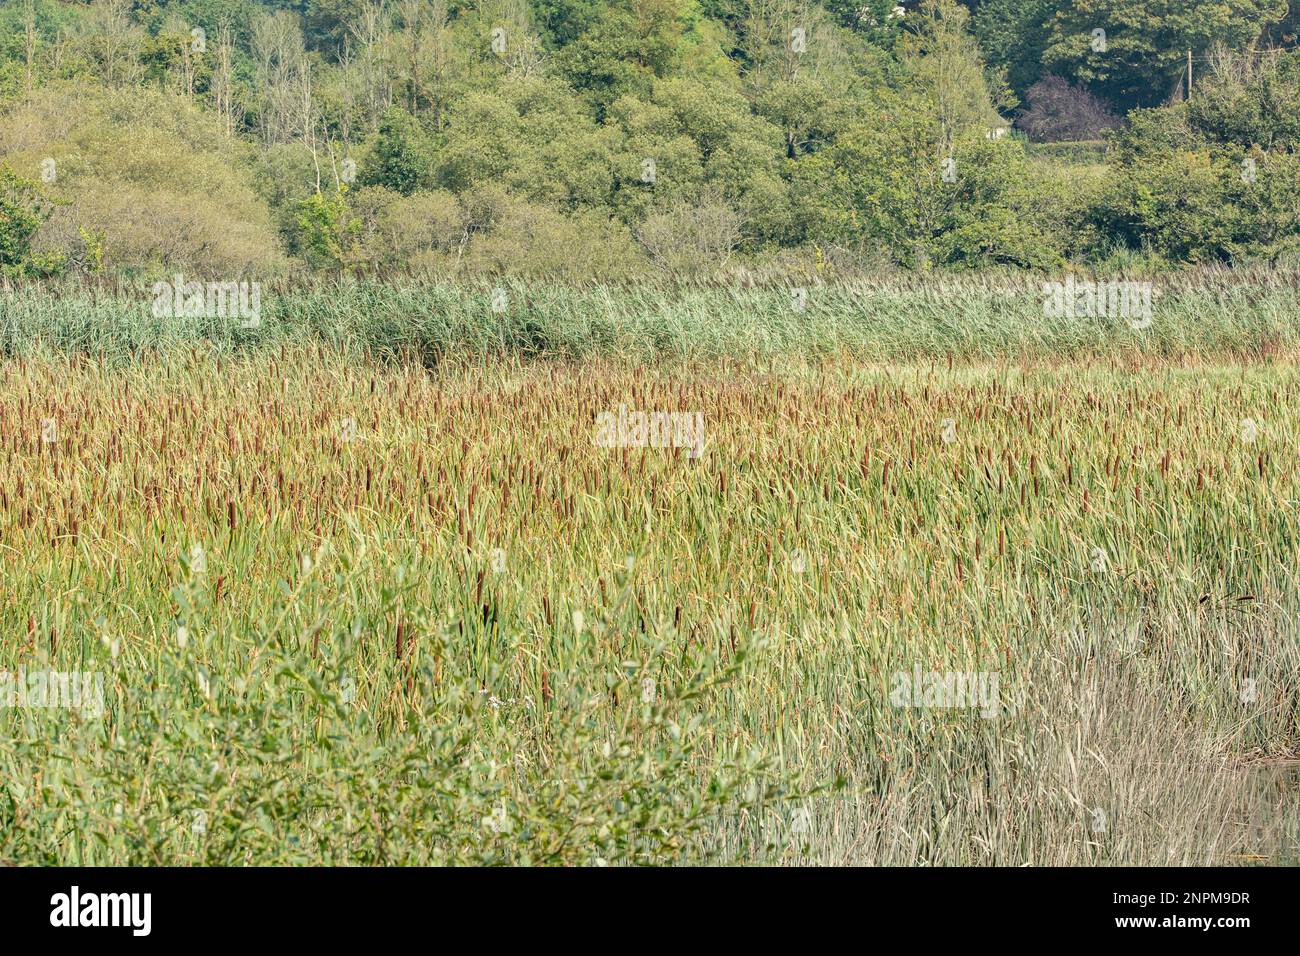 Schilfbeet (Katzenschwanz und Seezungenarten) – Typha latifolia und Phragmites communis. Typische Feuchtgebiete Großbritanniens. Stockfoto